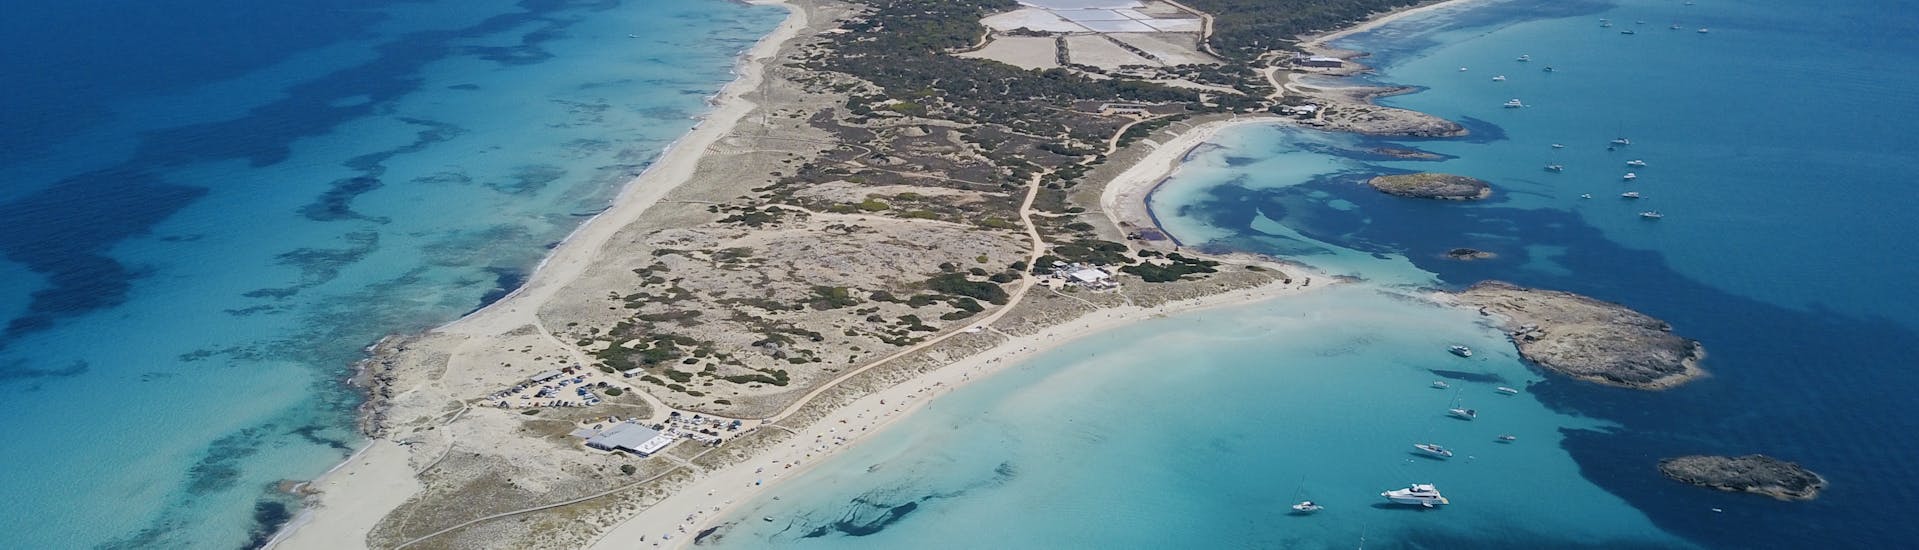 Ausblicke von einer Private Ganztägigen Katamarantour von Ibiza nach Formentera mit Schnorcheln mit Goa Catamaran Ibiza.